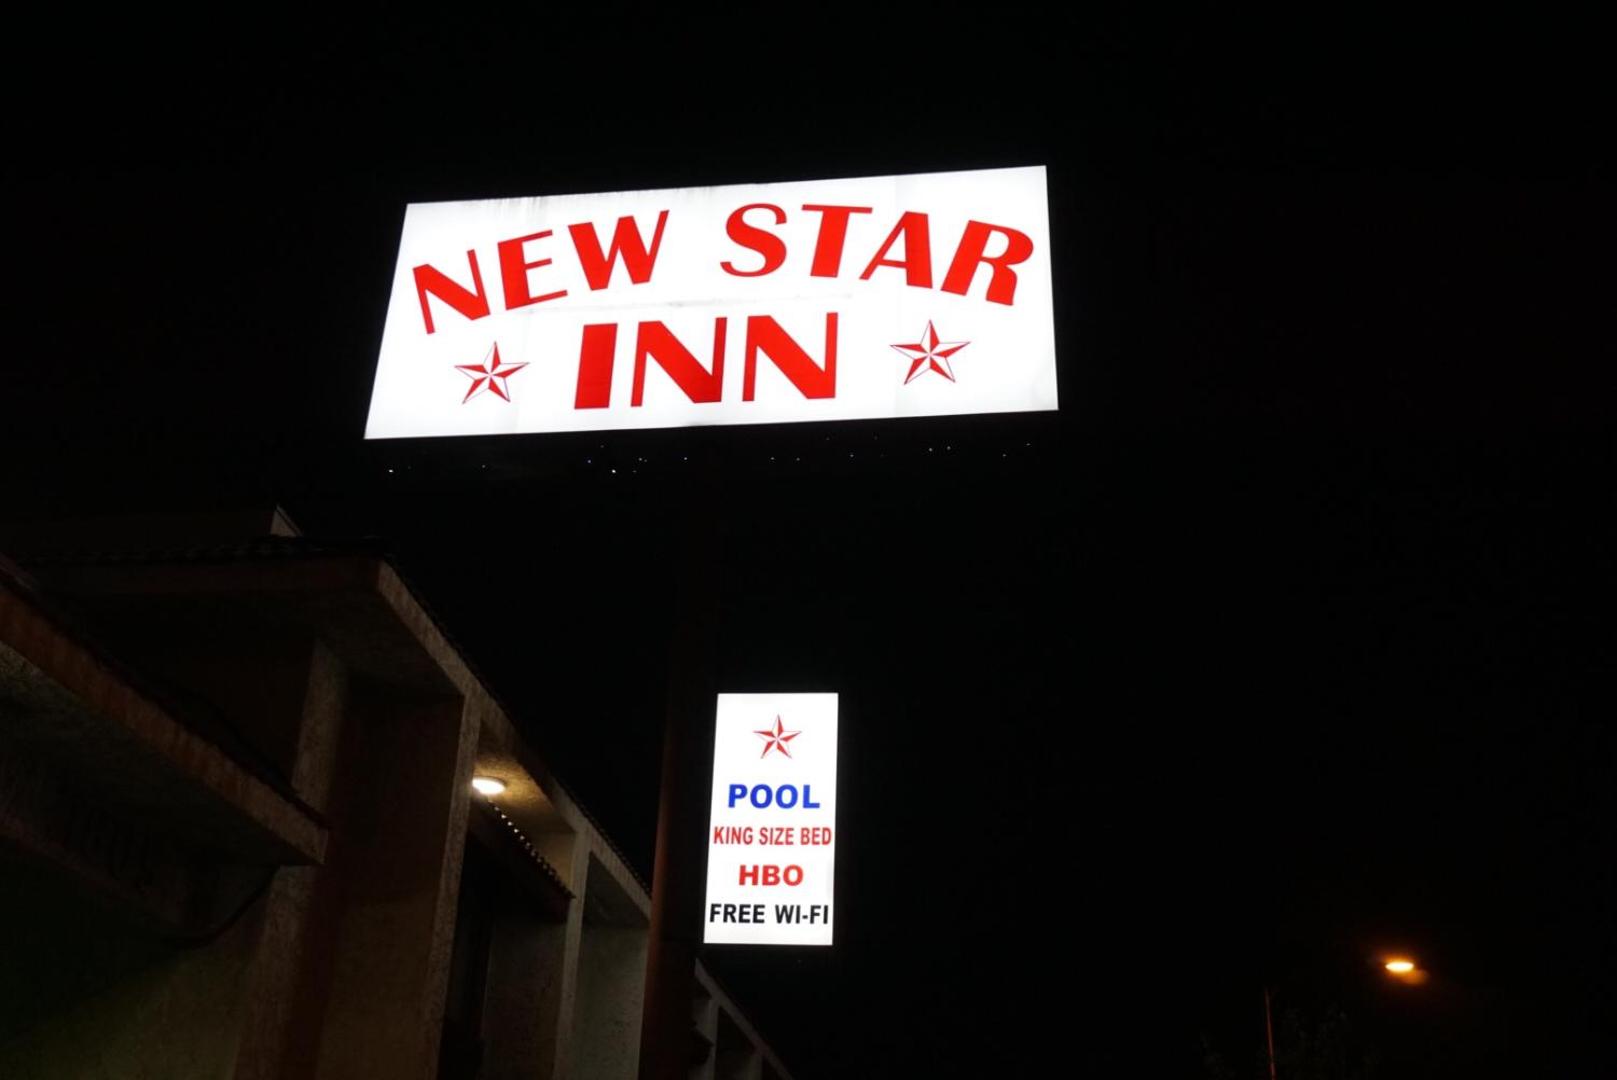 New Star Inn